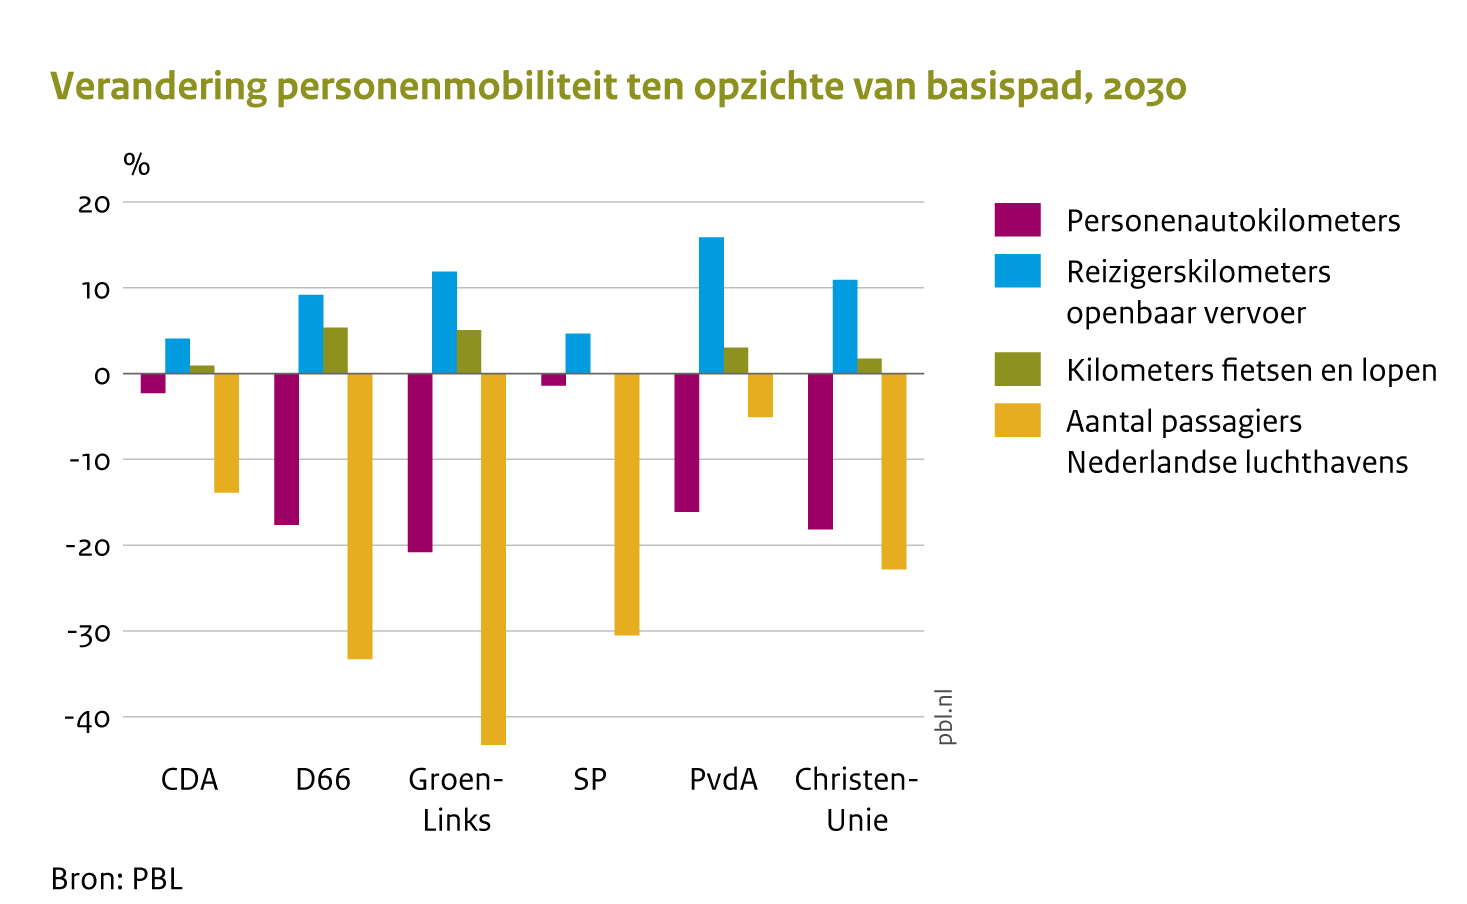 Deze figuur laat zien dat door de maatregelenpakketten van de politieke partijen het autogebruik en het aantal passagiers op Nederlandse luchthavens afneemt, en dat het openbaarvervoergebruik, fietsen en lopen toeneemt, maar dat de mate waarin sterk verschilt.